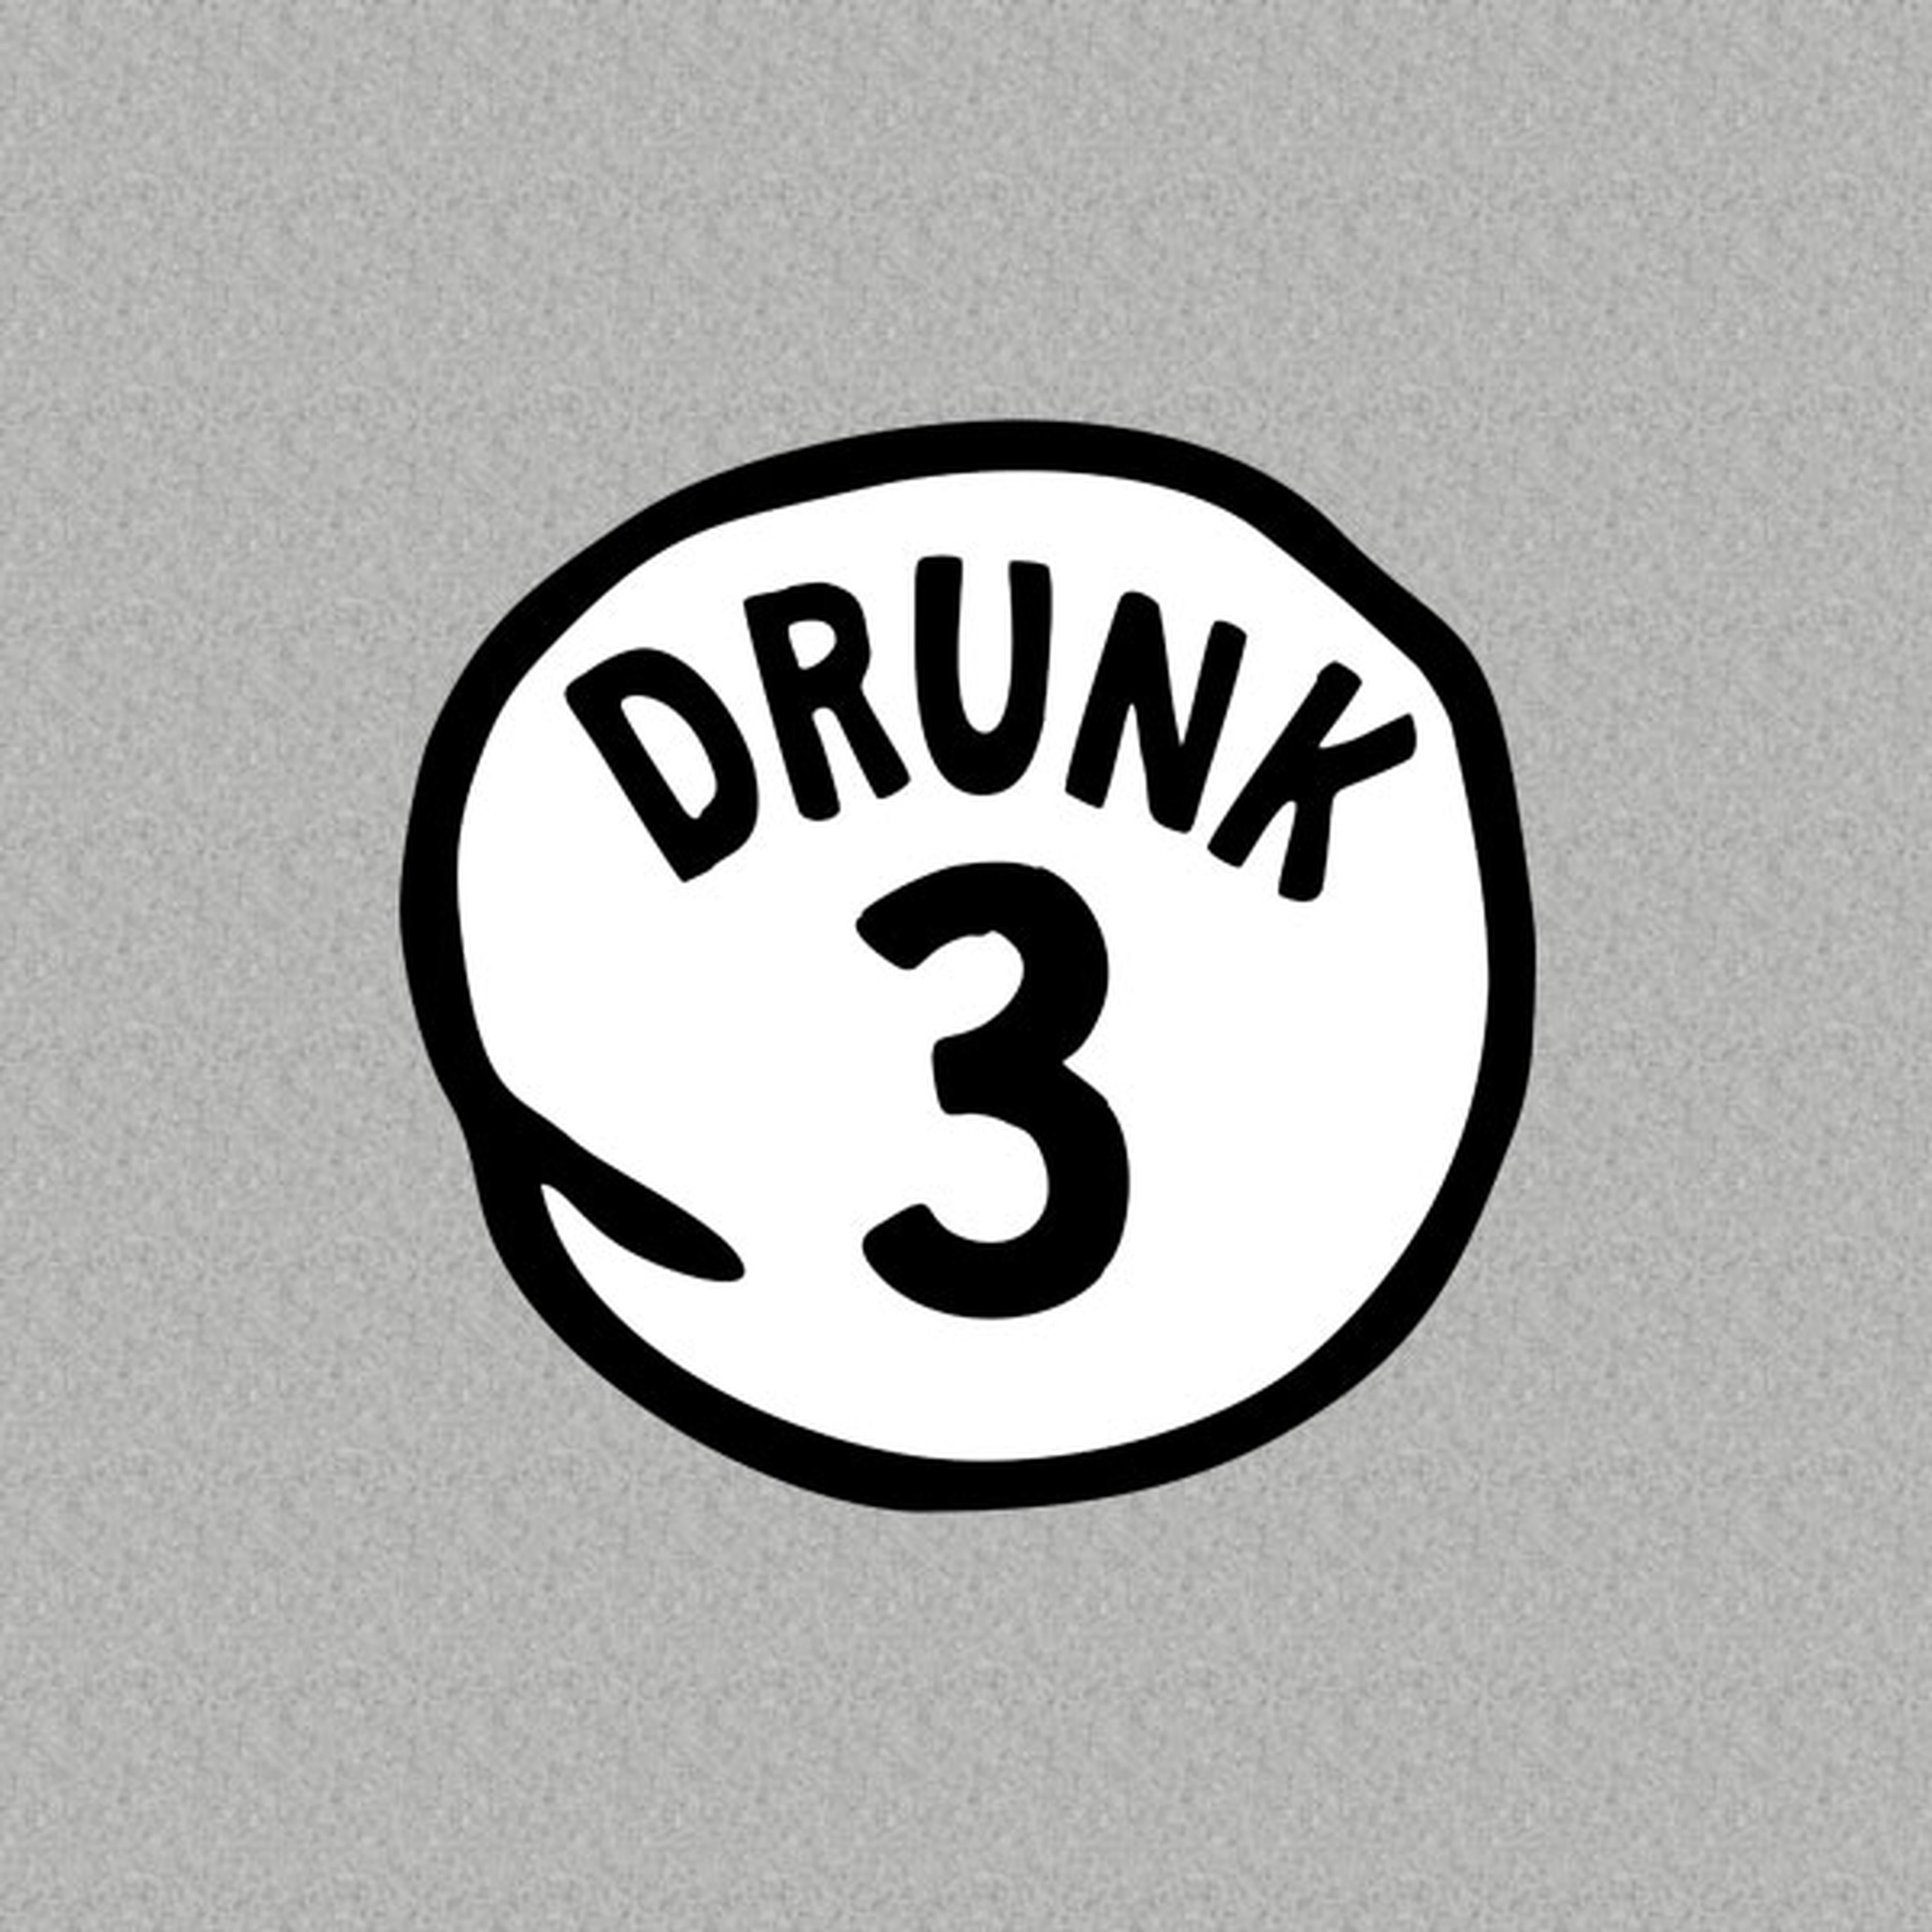 Drunk #3 - T-shirt